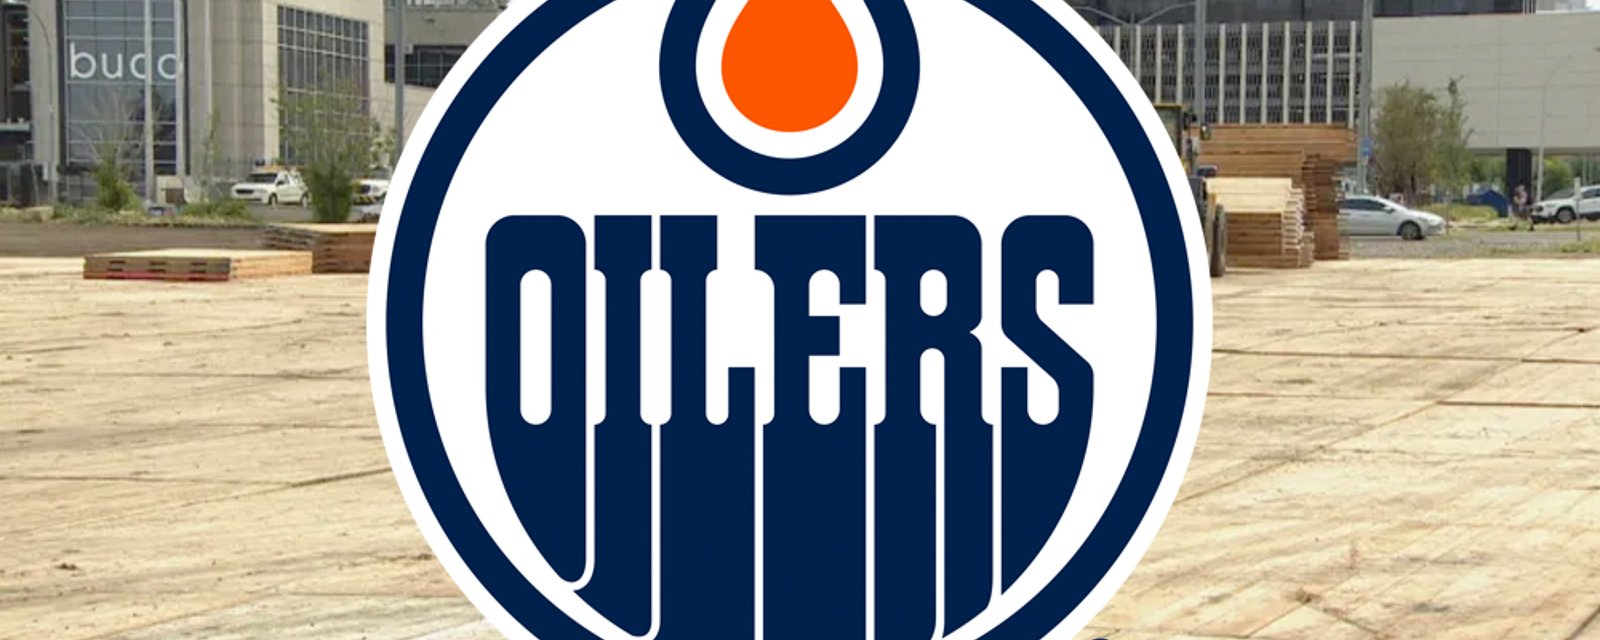 Oilers planning drive-in beer garden for downtown Edmonton